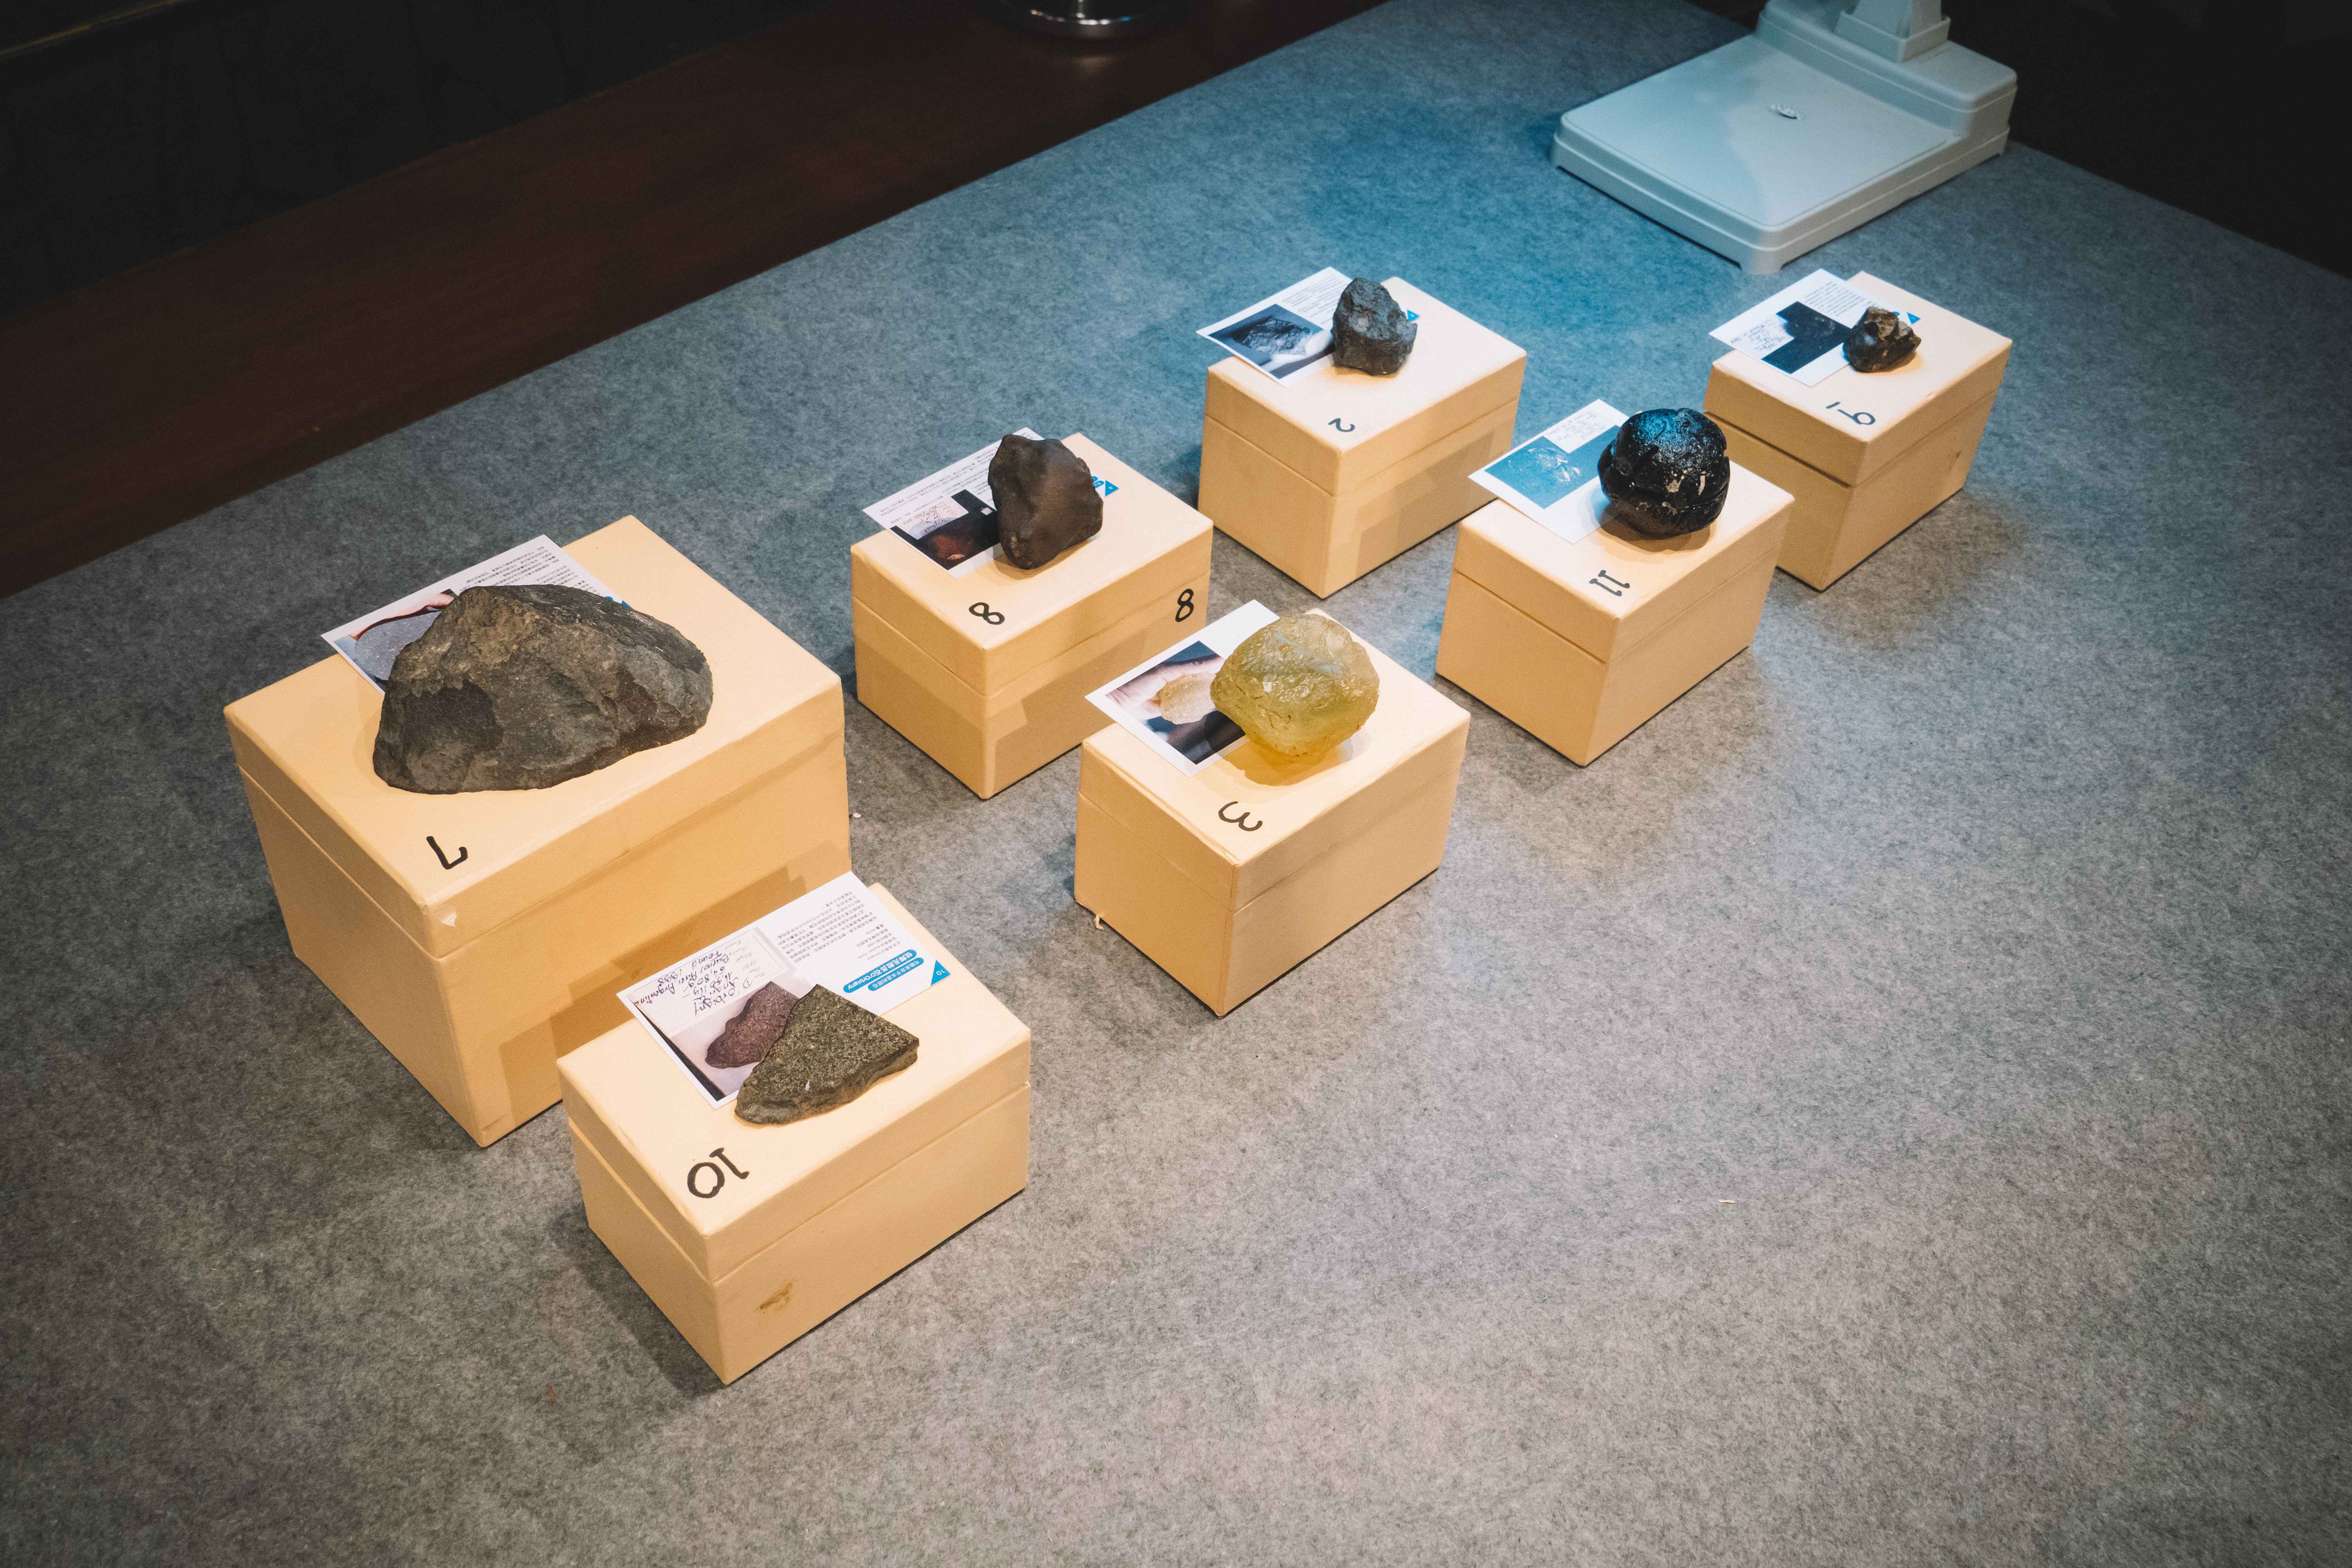 正佳自然科学博物馆申请一批价值23万美元的进口陨石标本。正佳自然科学博物馆供图